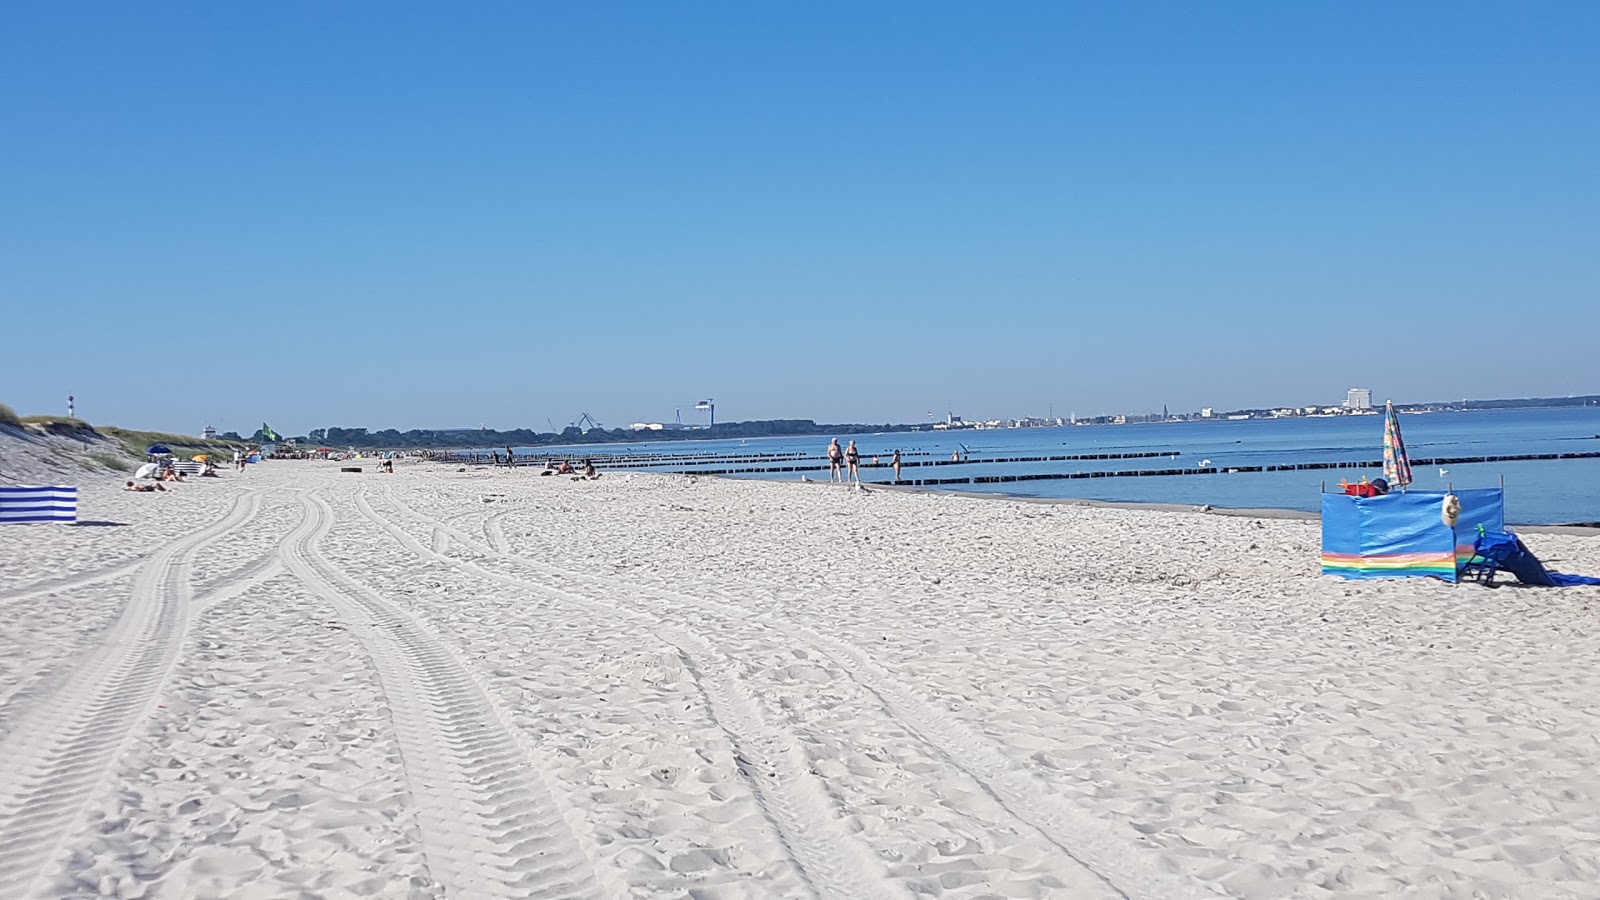 Fotografie cu Markgrafenheide strand cu o suprafață de nisip strălucitor